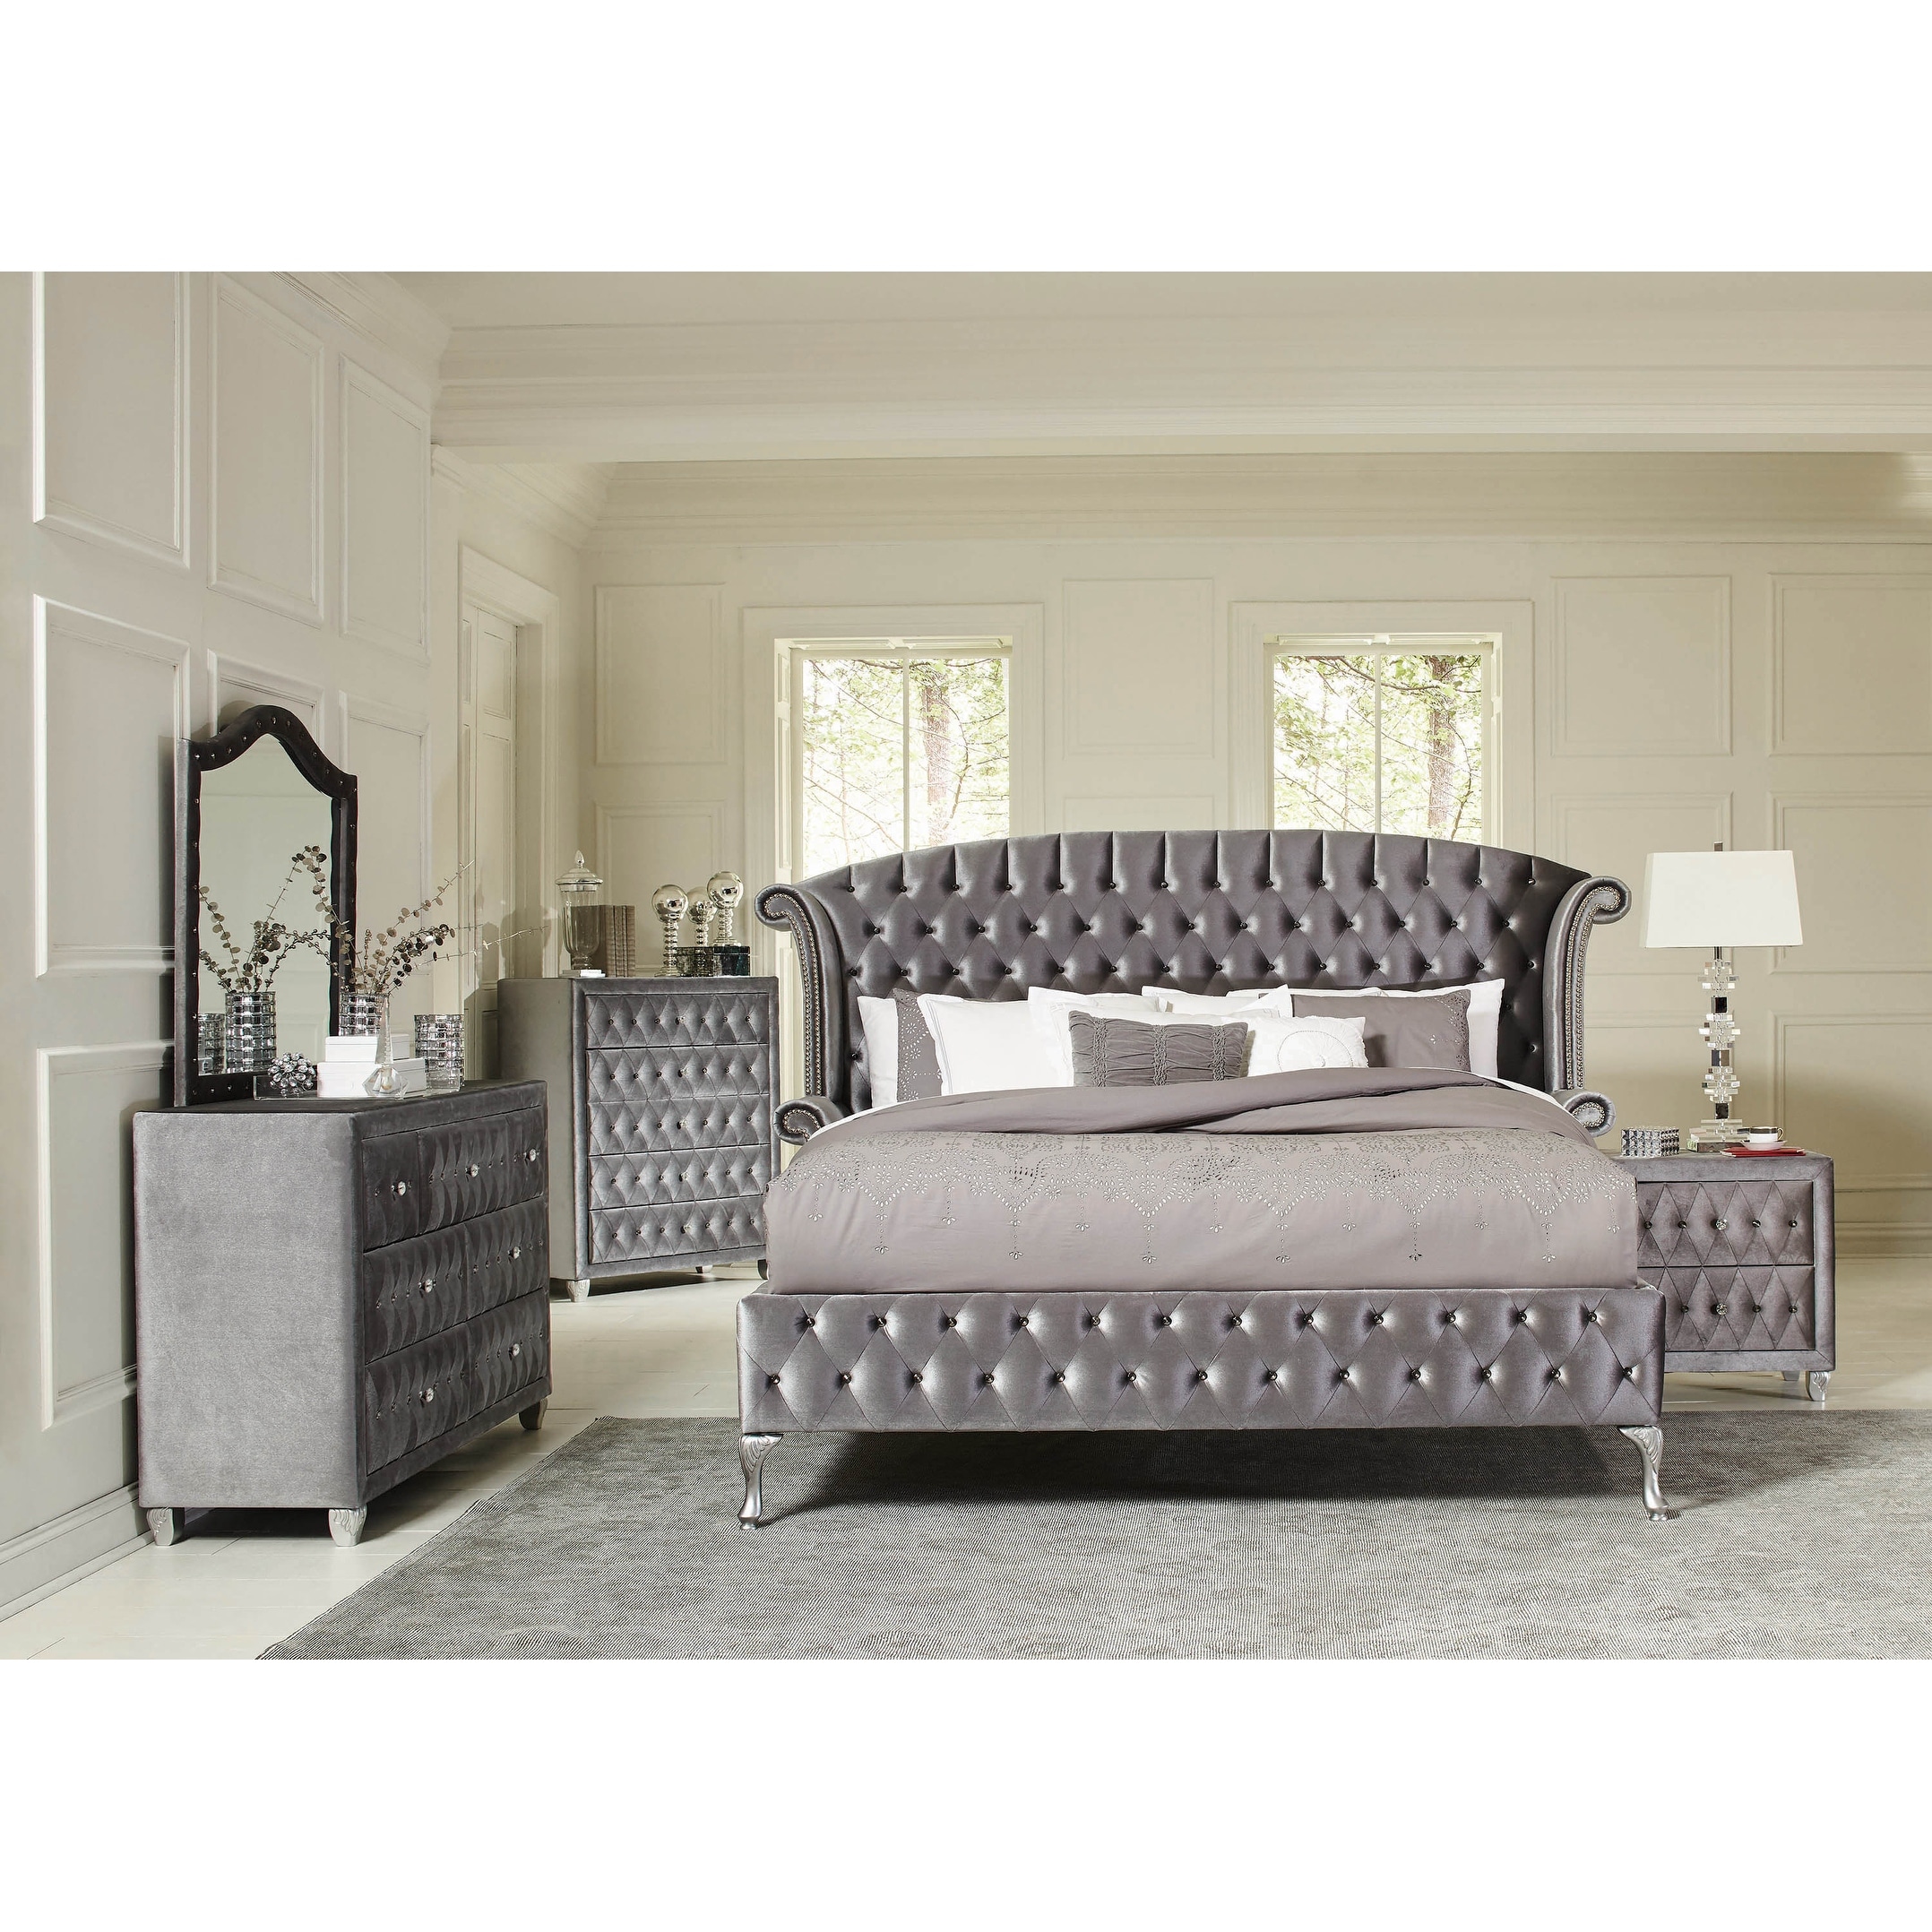 Audrey Metallic 6-piece Upholstered Bedroom Set